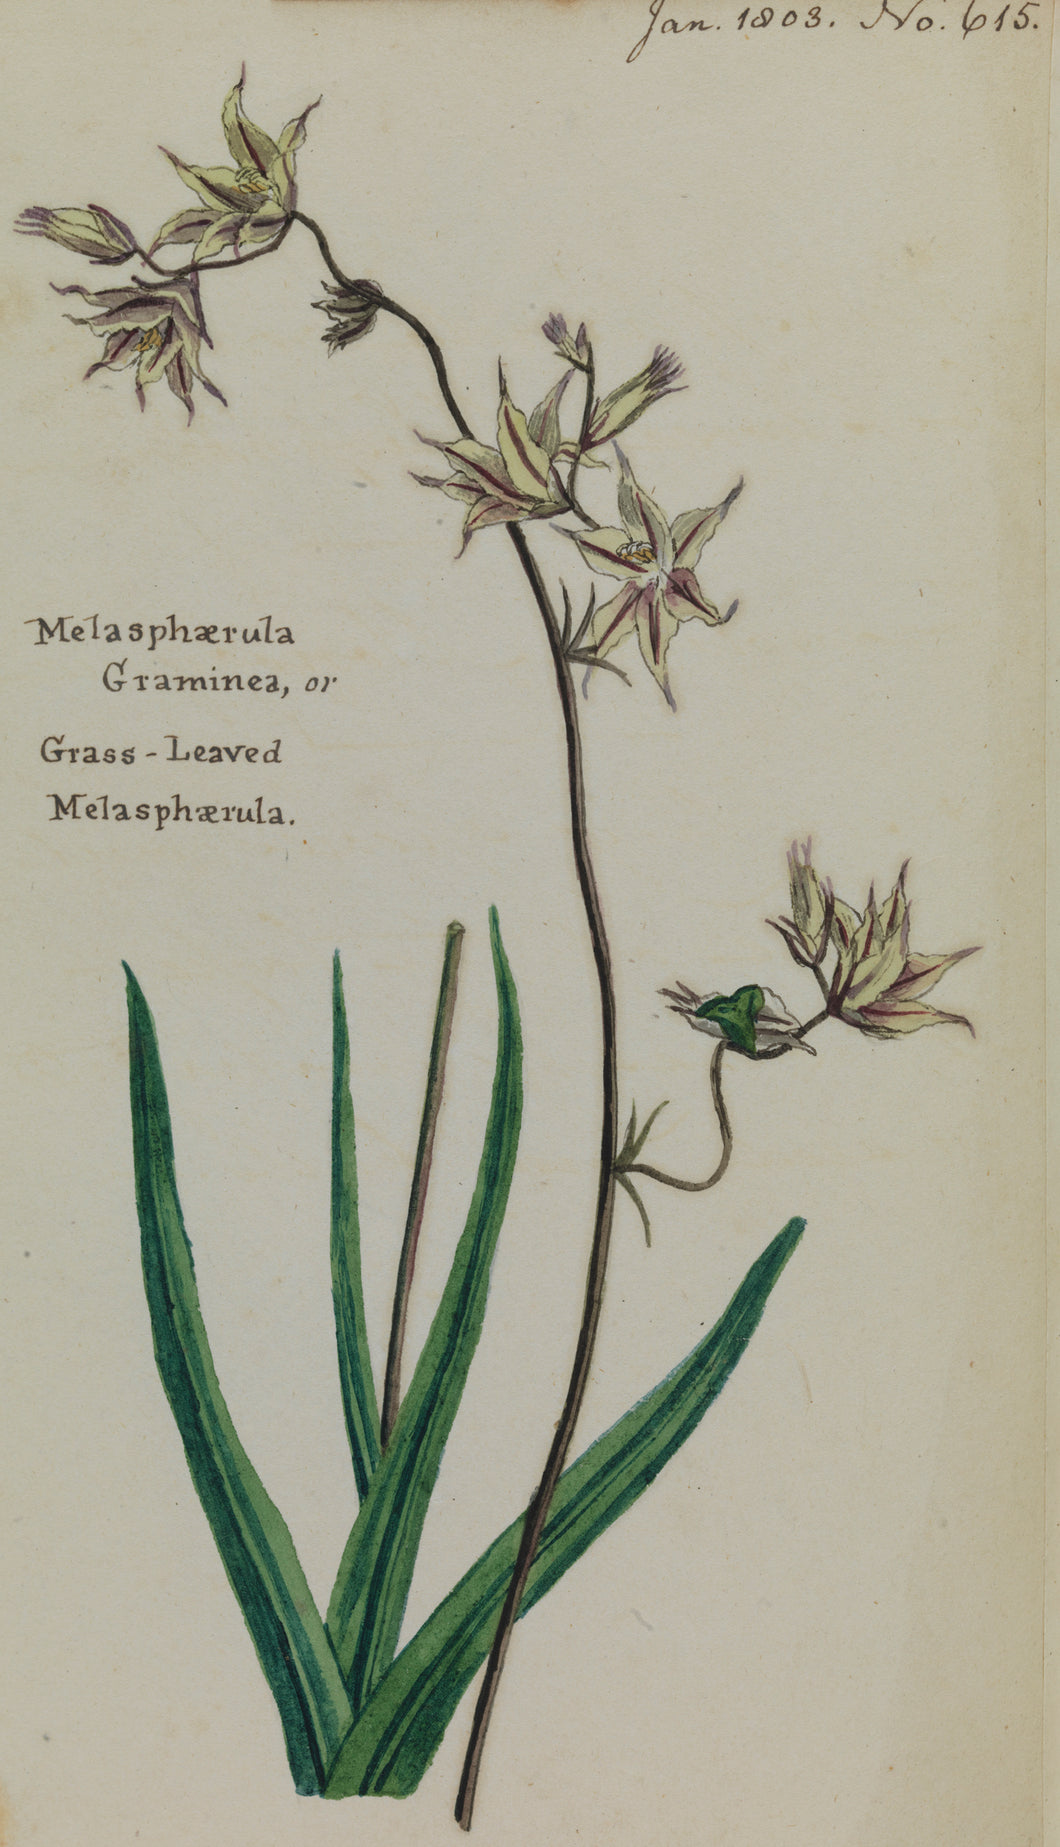 Grass-leaved Melasphaerula